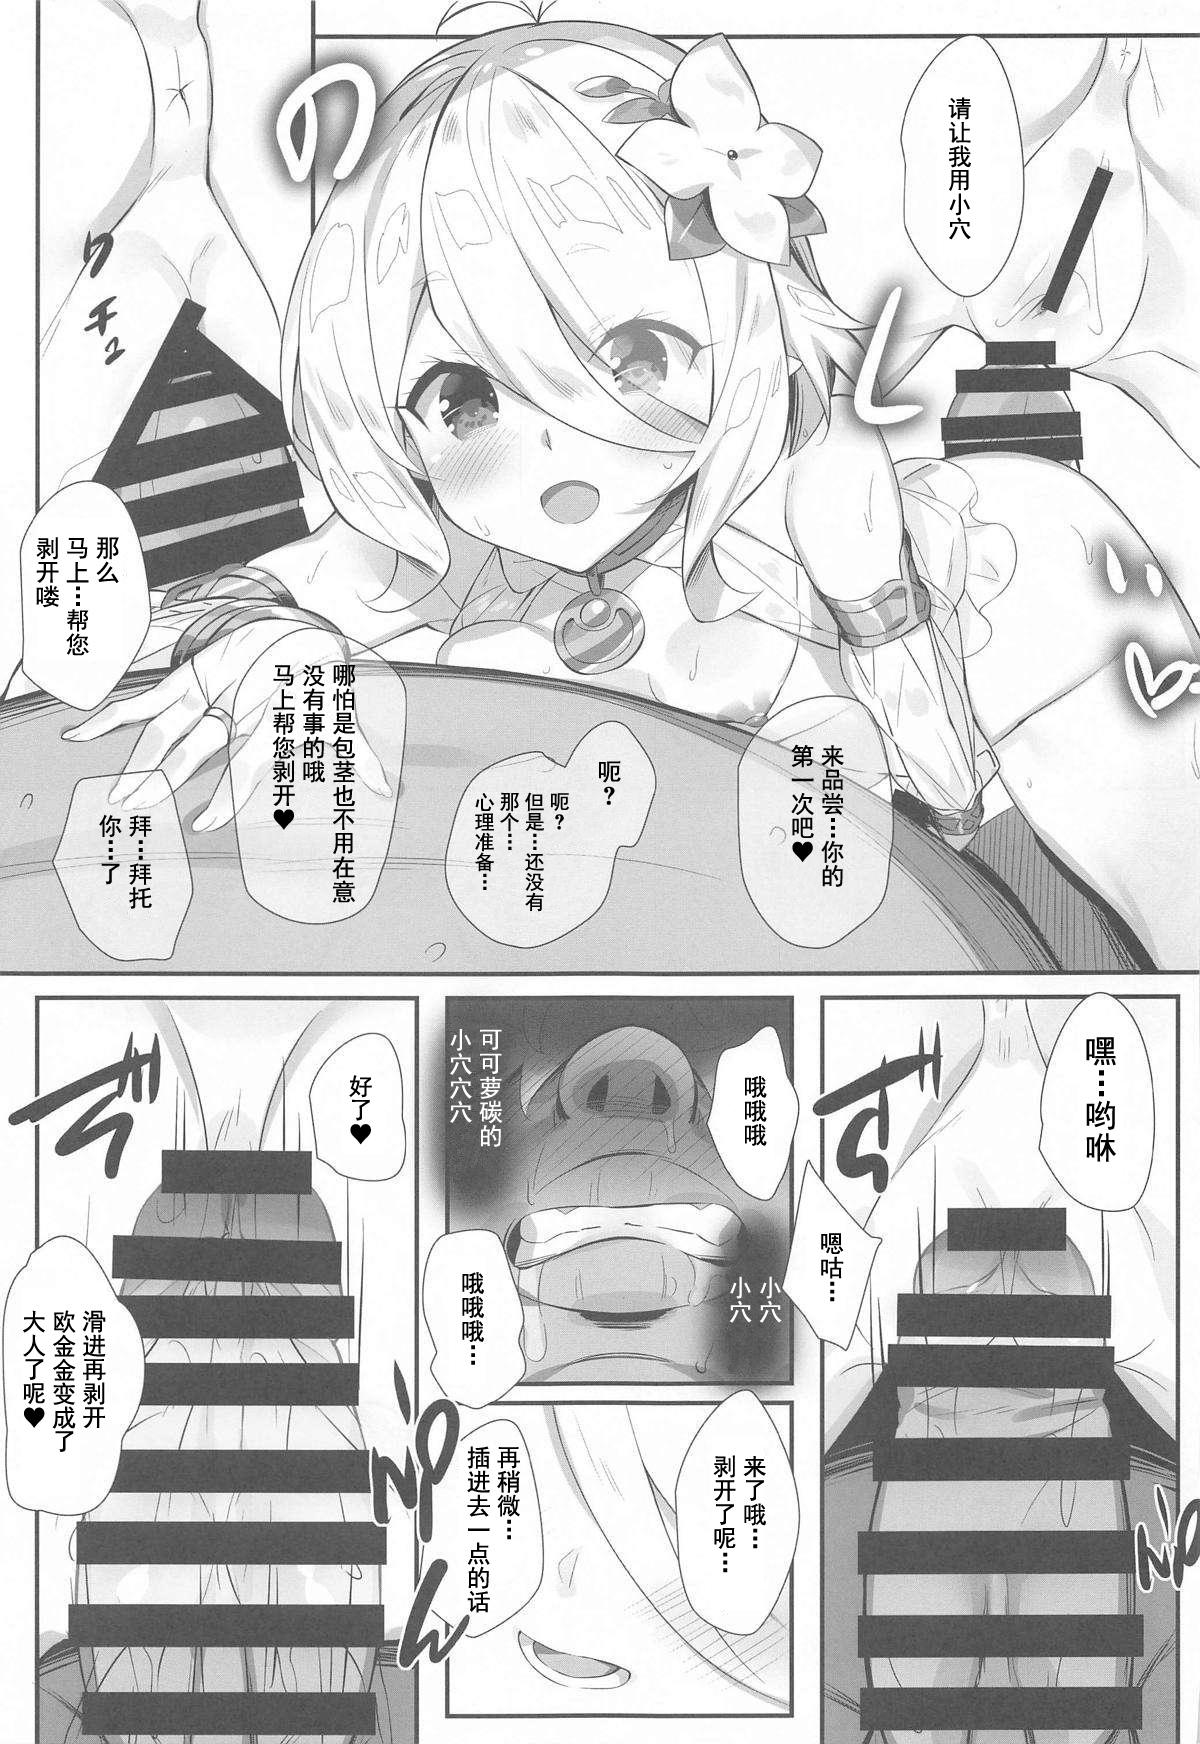 Buttfucking Aruji-sama no Tame nara... - Princess connect Putas - Page 12